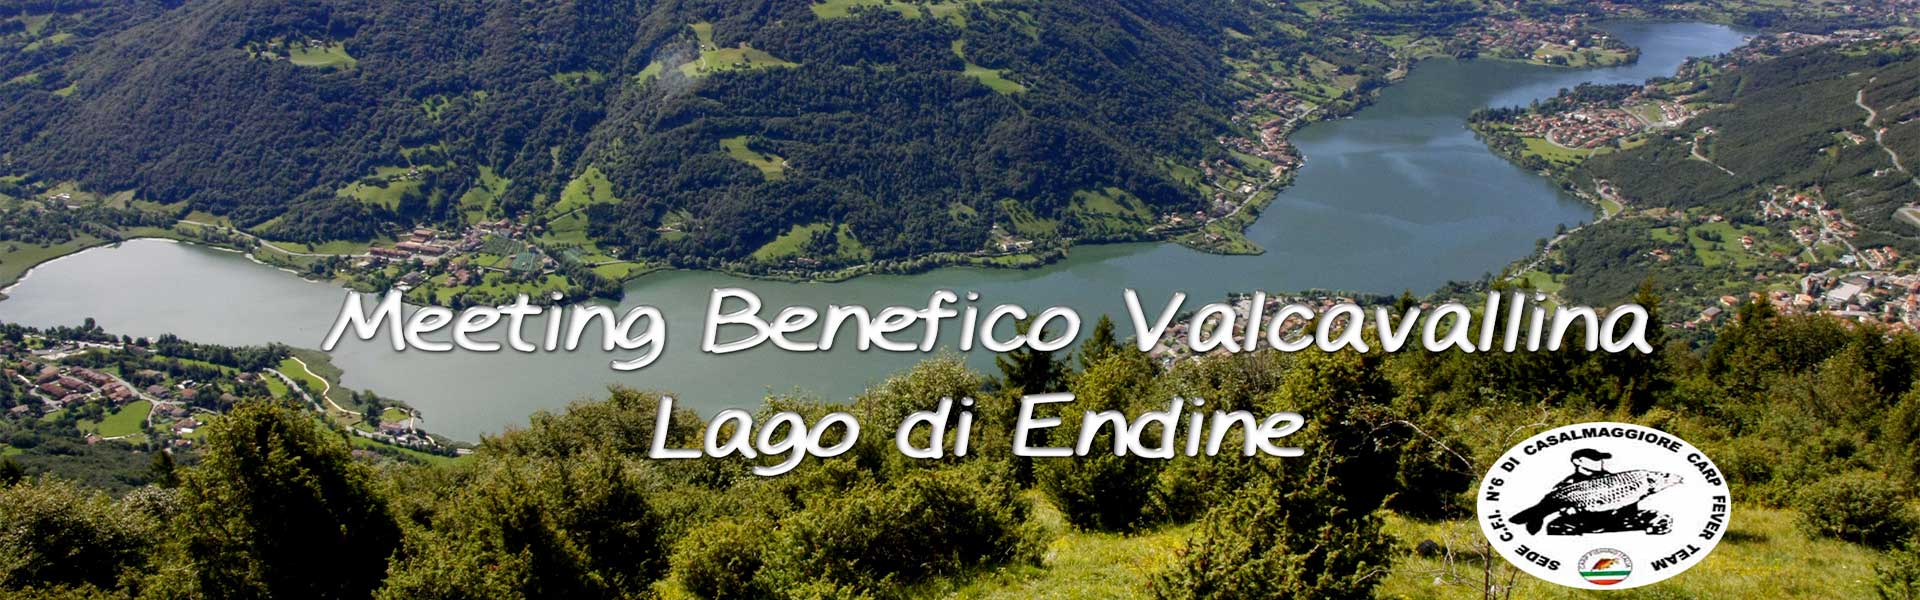 Meeting Benefico Valcavallina